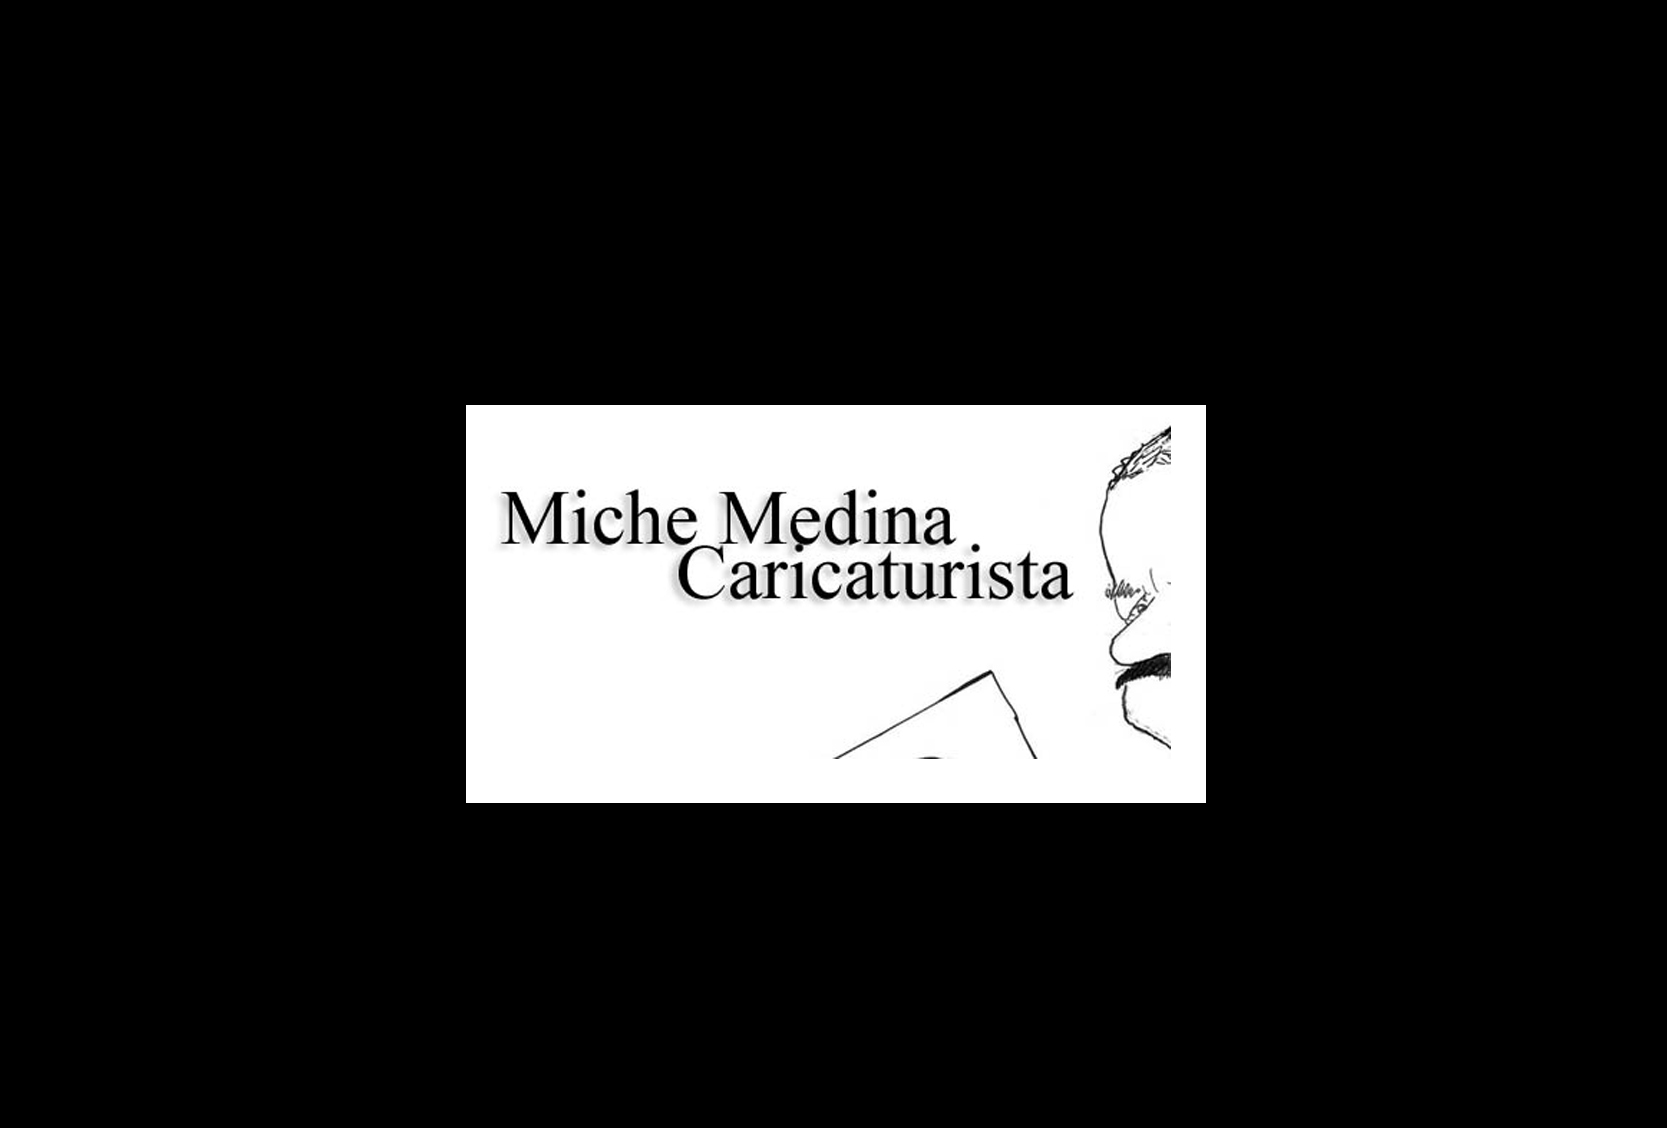 Miche Medina Caricaturista, l Caricaturista Miche Medina influenció con sus dibujos la opinión social y política de Puerto Rico